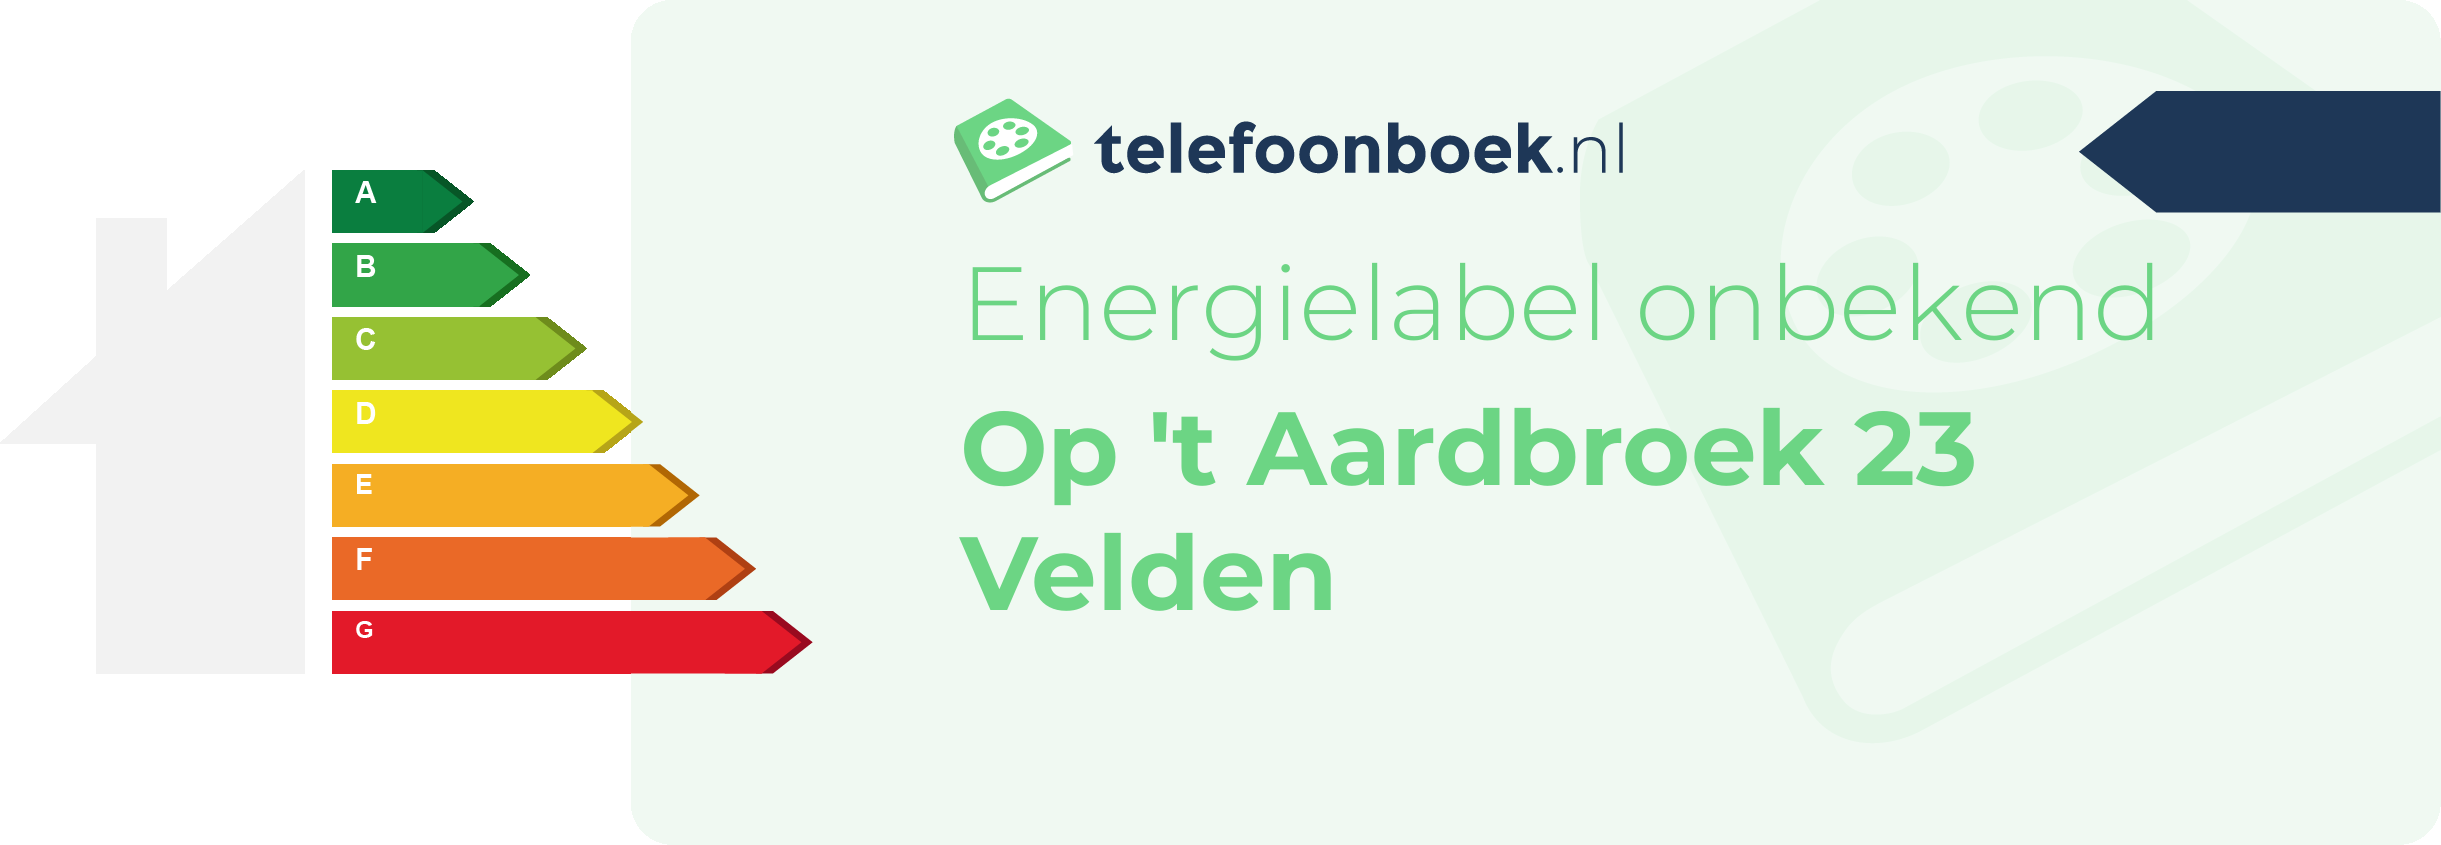 Energielabel Op 't Aardbroek 23 Velden